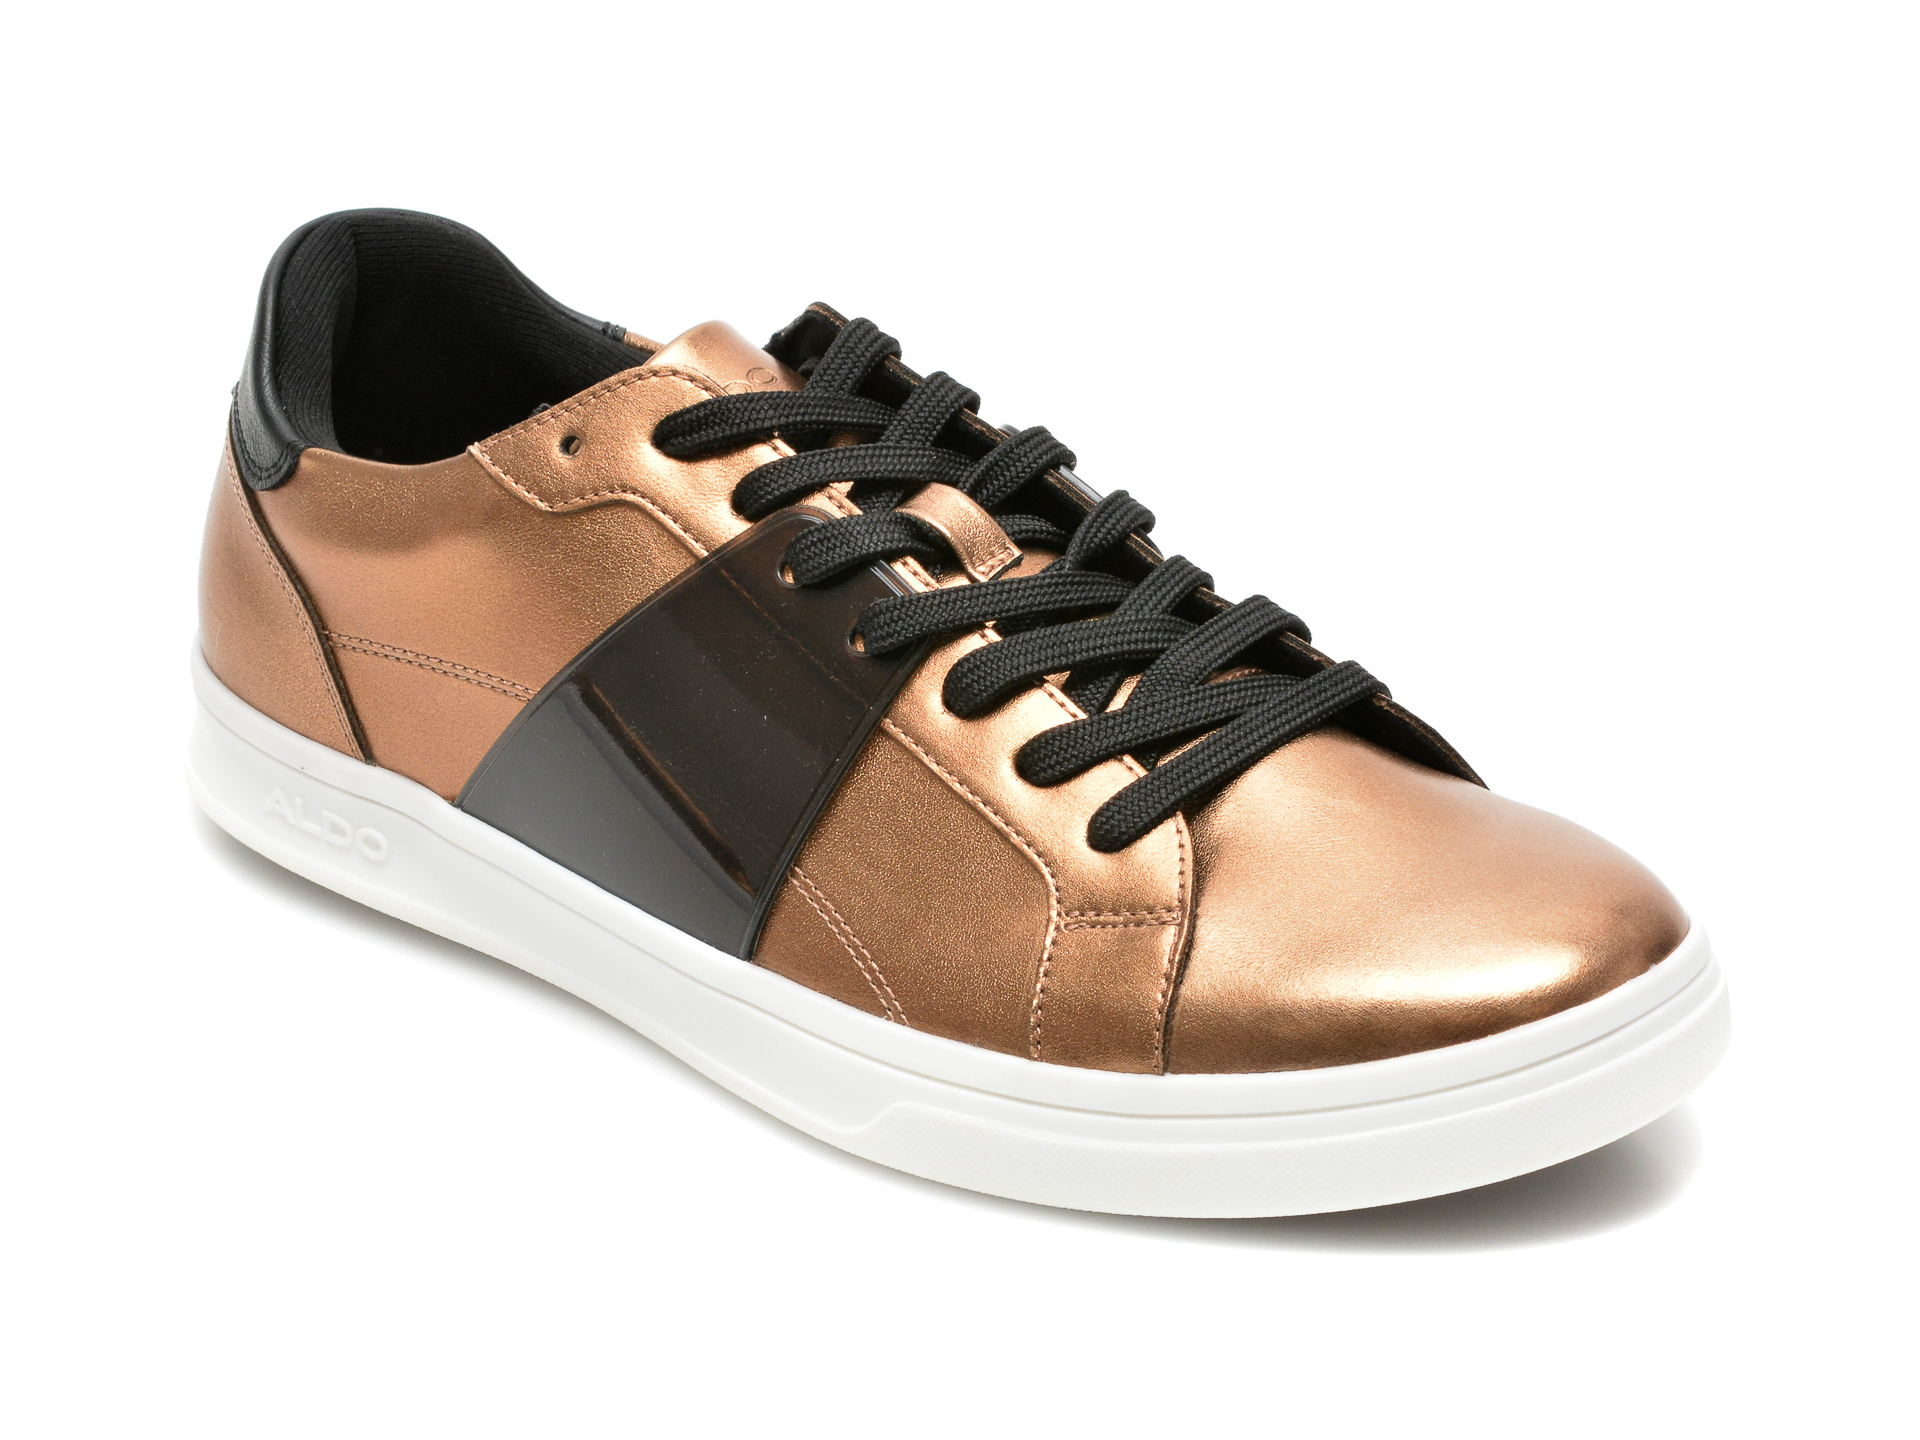 Pantofi ALDO bronz, 13265418, din piele ecologica Aldo